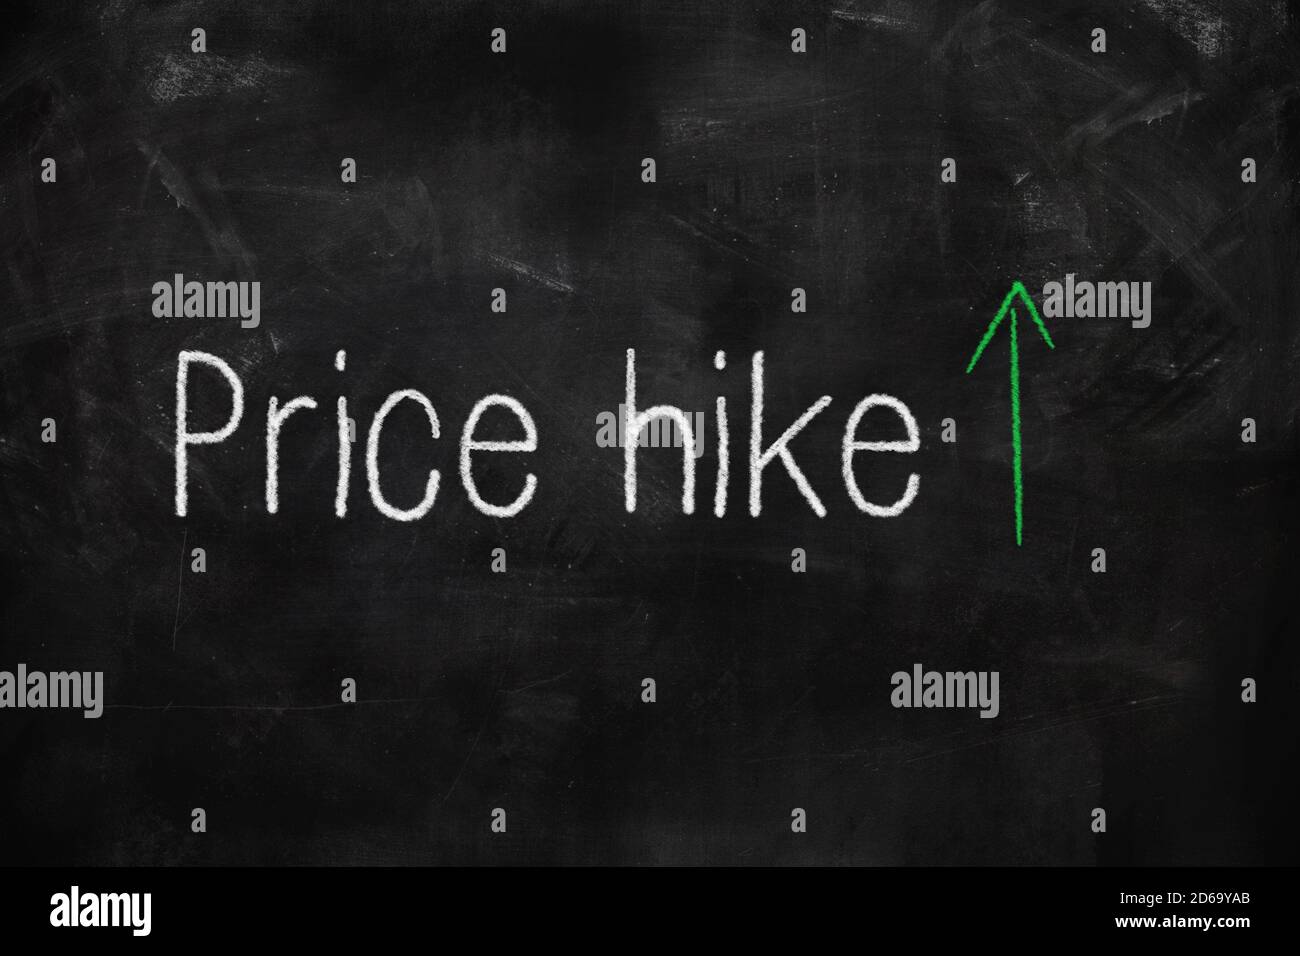 Subida de precios escrita con tiza blanca y verde en pizarra en el aula Foto de stock